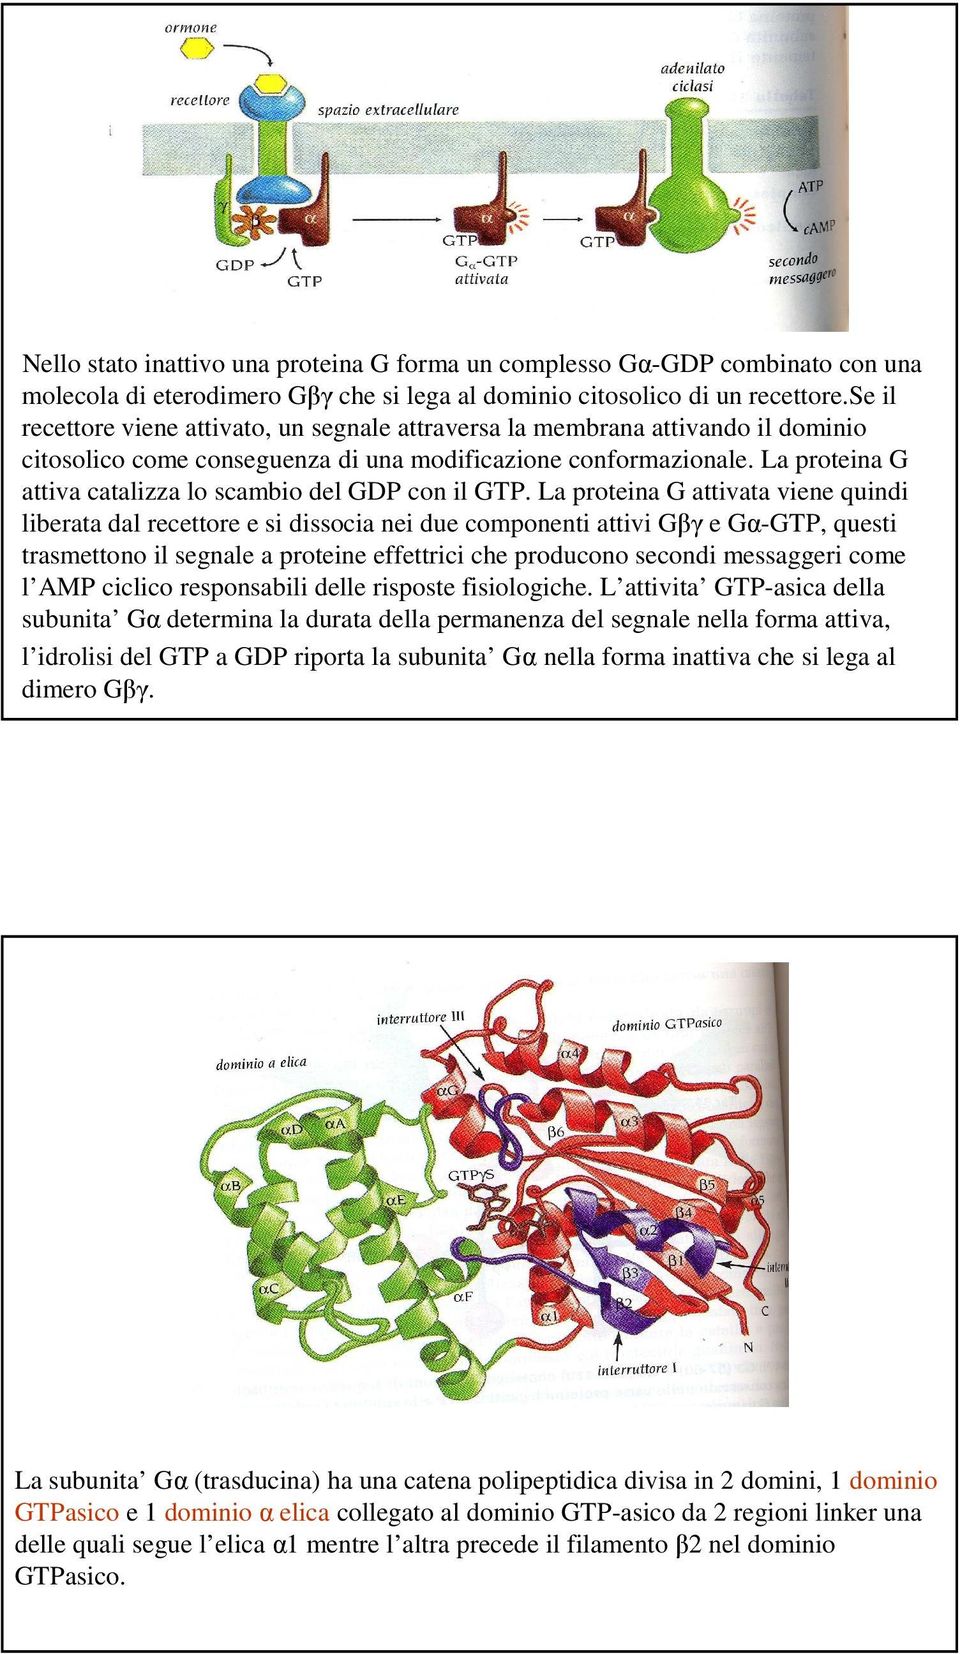 La proteina G attiva catalizza lo scambio del GDP con il GTP.